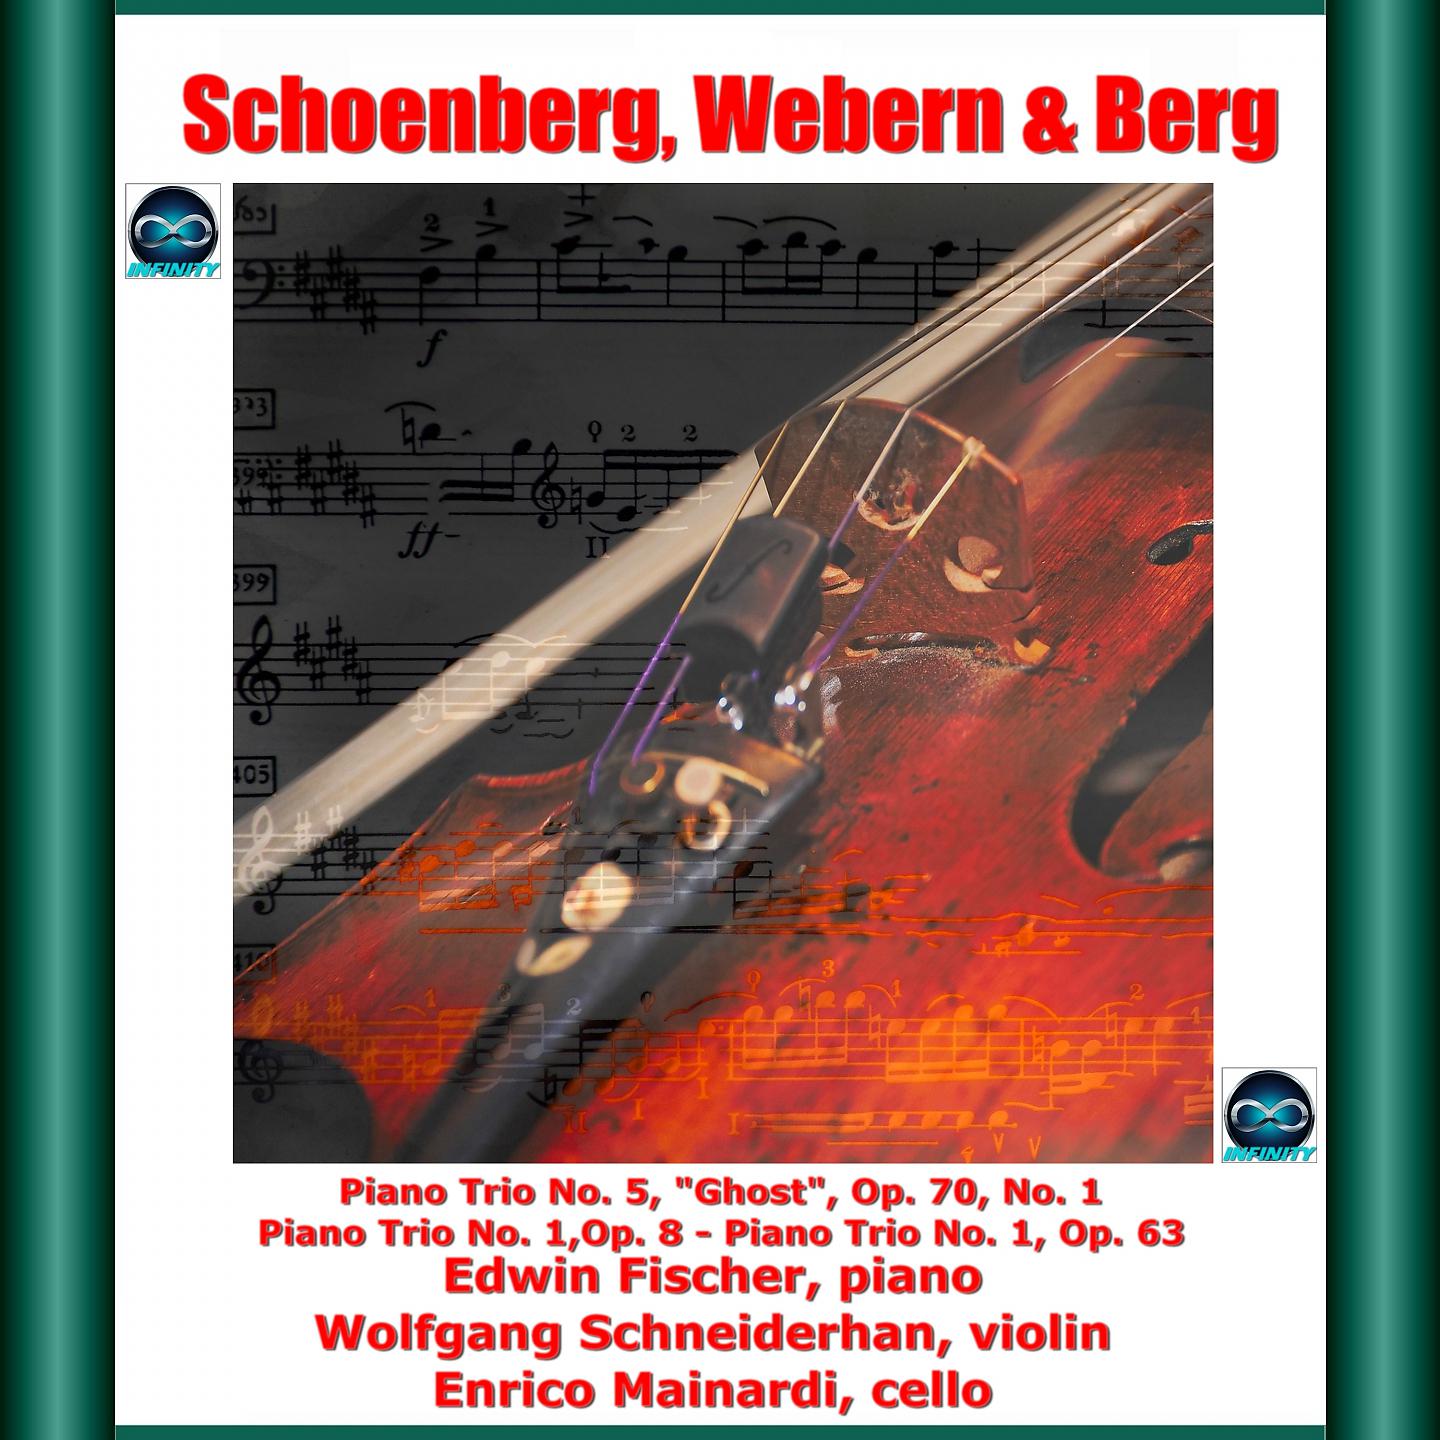 Постер альбома Schoenberg, webern & berg: piano trio no. 5, "Ghost", Op. 70, no. 1 - piano trio no. 1, op. 8 - piano trio no. 1, op. 63